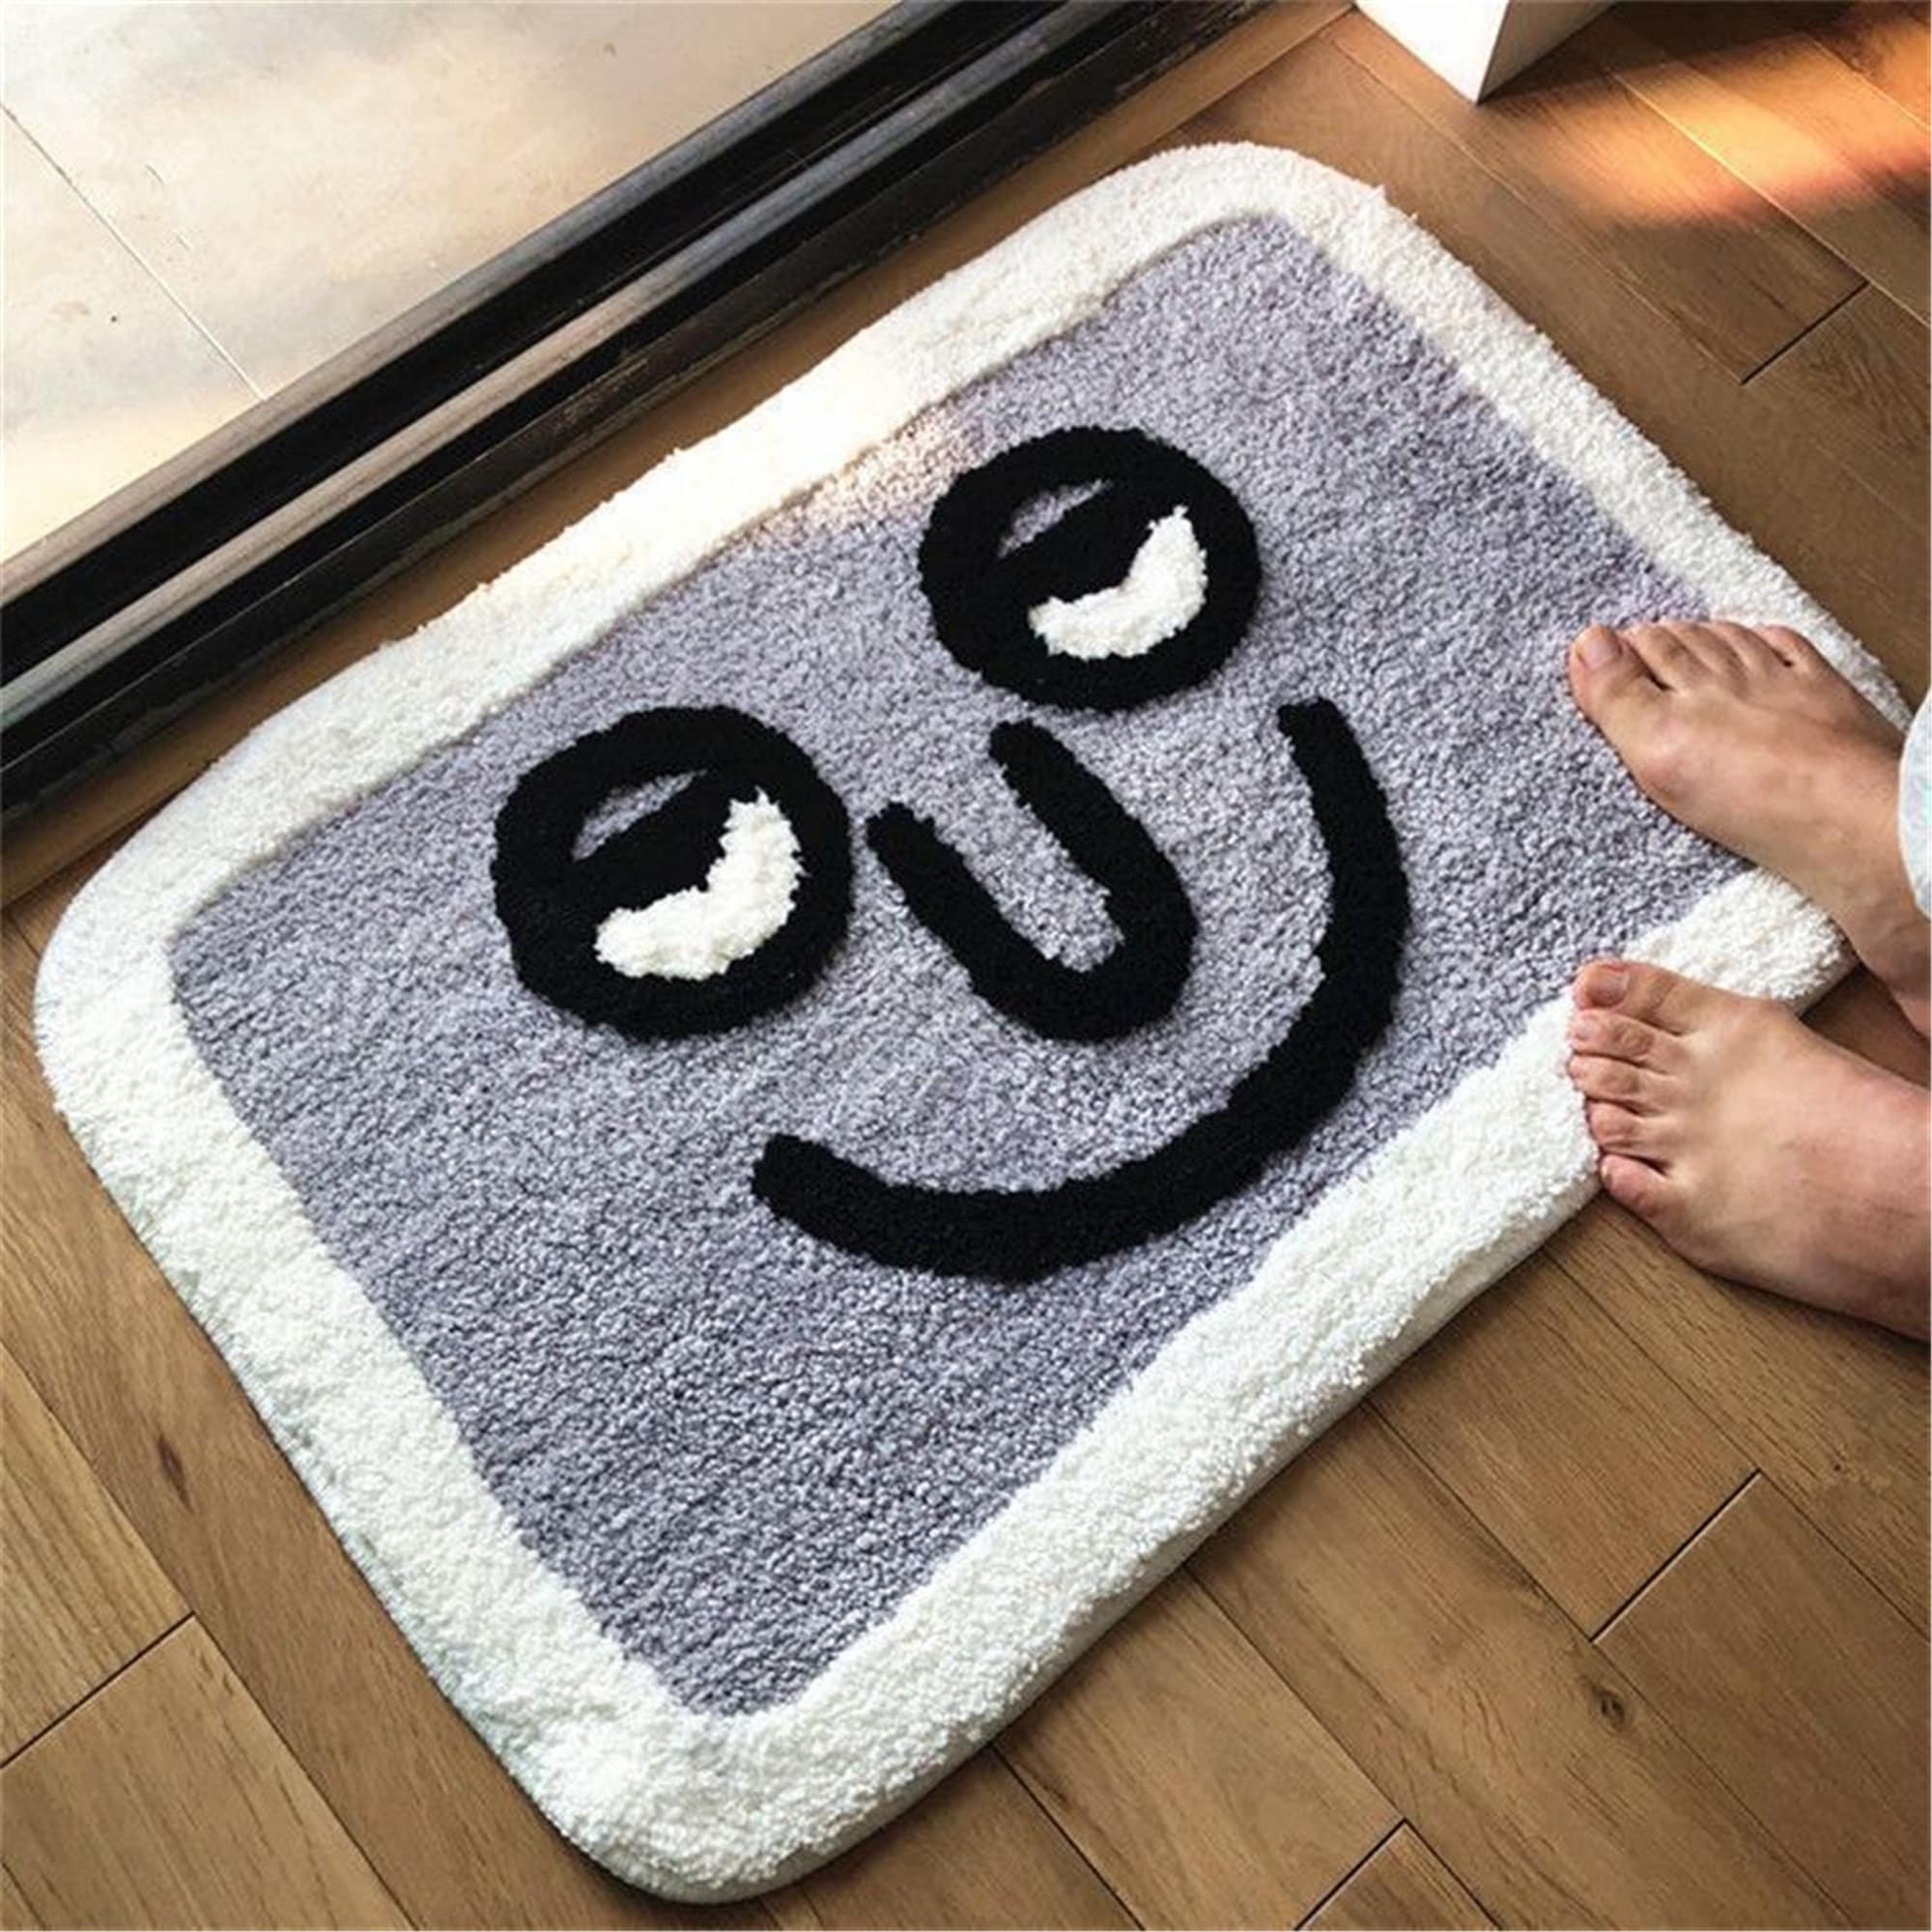 Funny Emoji Rug, Interesting Toilet Floor Mat, Fun Bath Rug, Non Slip Bathroom Rug, Dorm Room Area Rug, Gift For Kid Room, Housewarming Gift